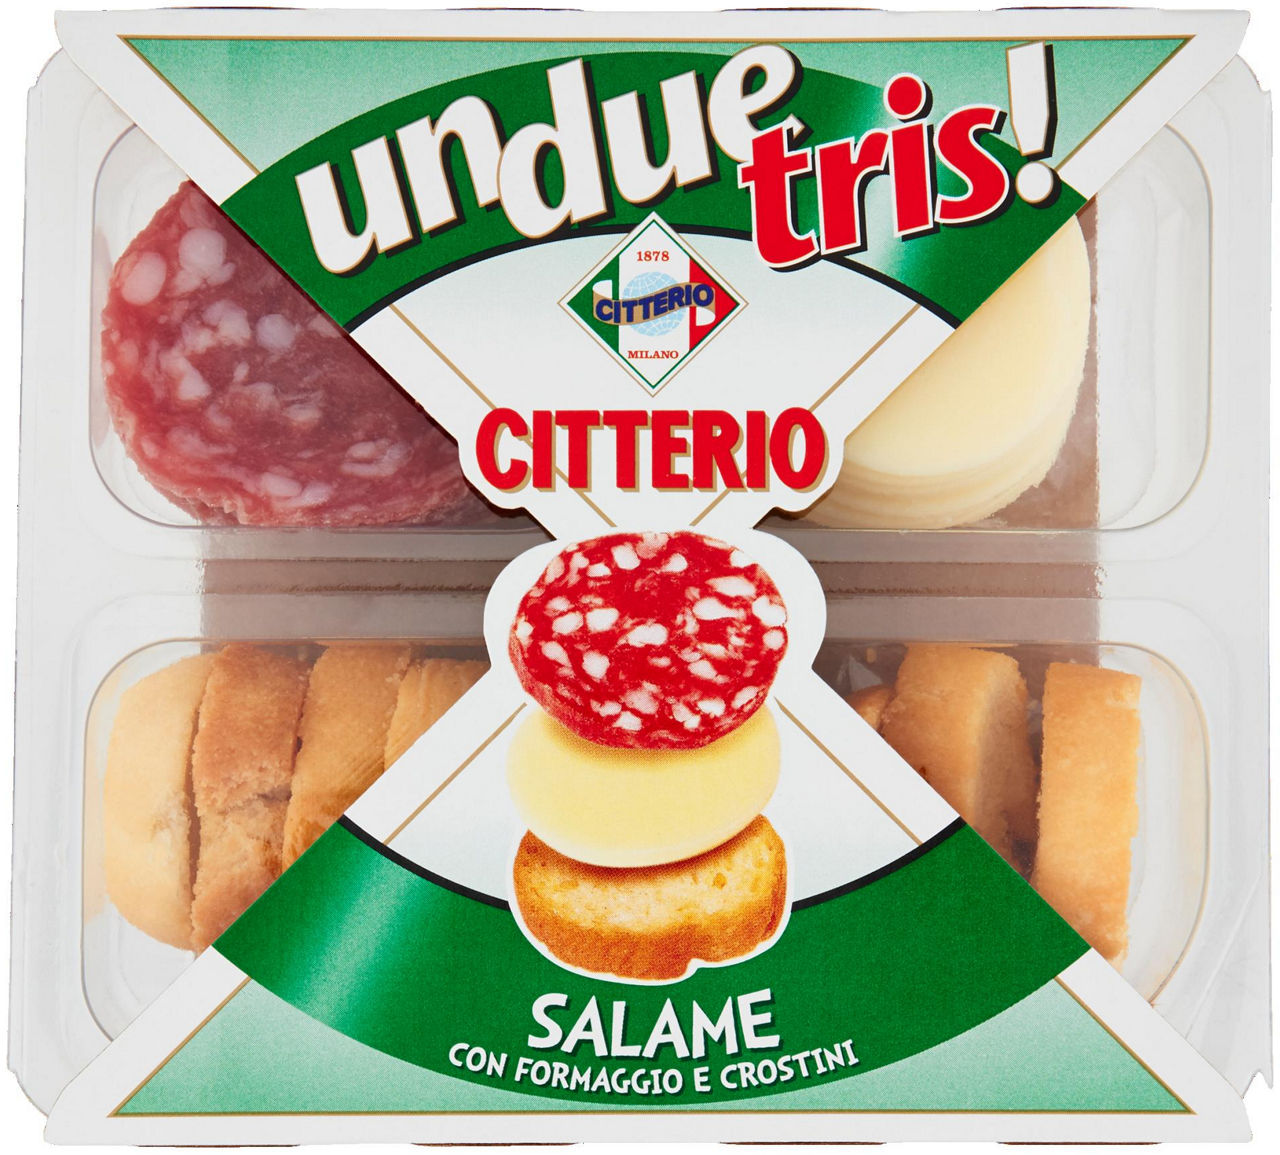 Unduetris merenda salame con crostini e formaggio citterio g 100